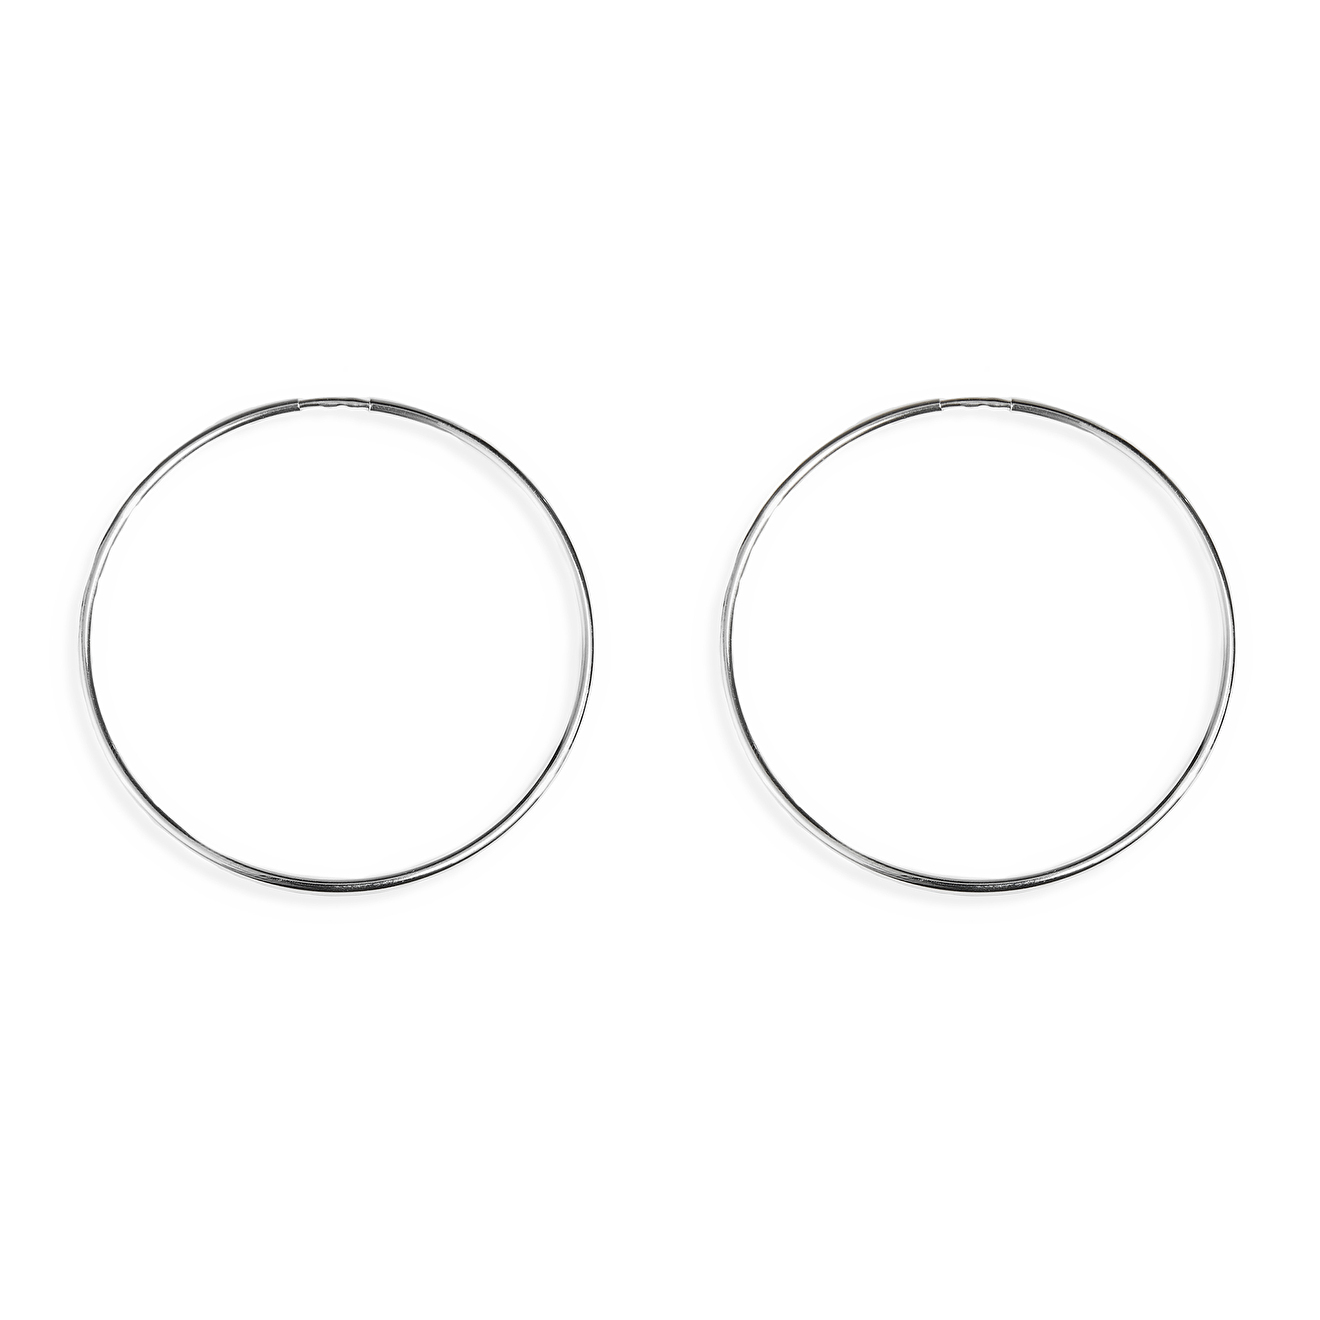 Prosto Jewelry Cредние серьги-кольца из серебра prosto jewlry серьги кликеры из серебра с подвесами и жемчугом